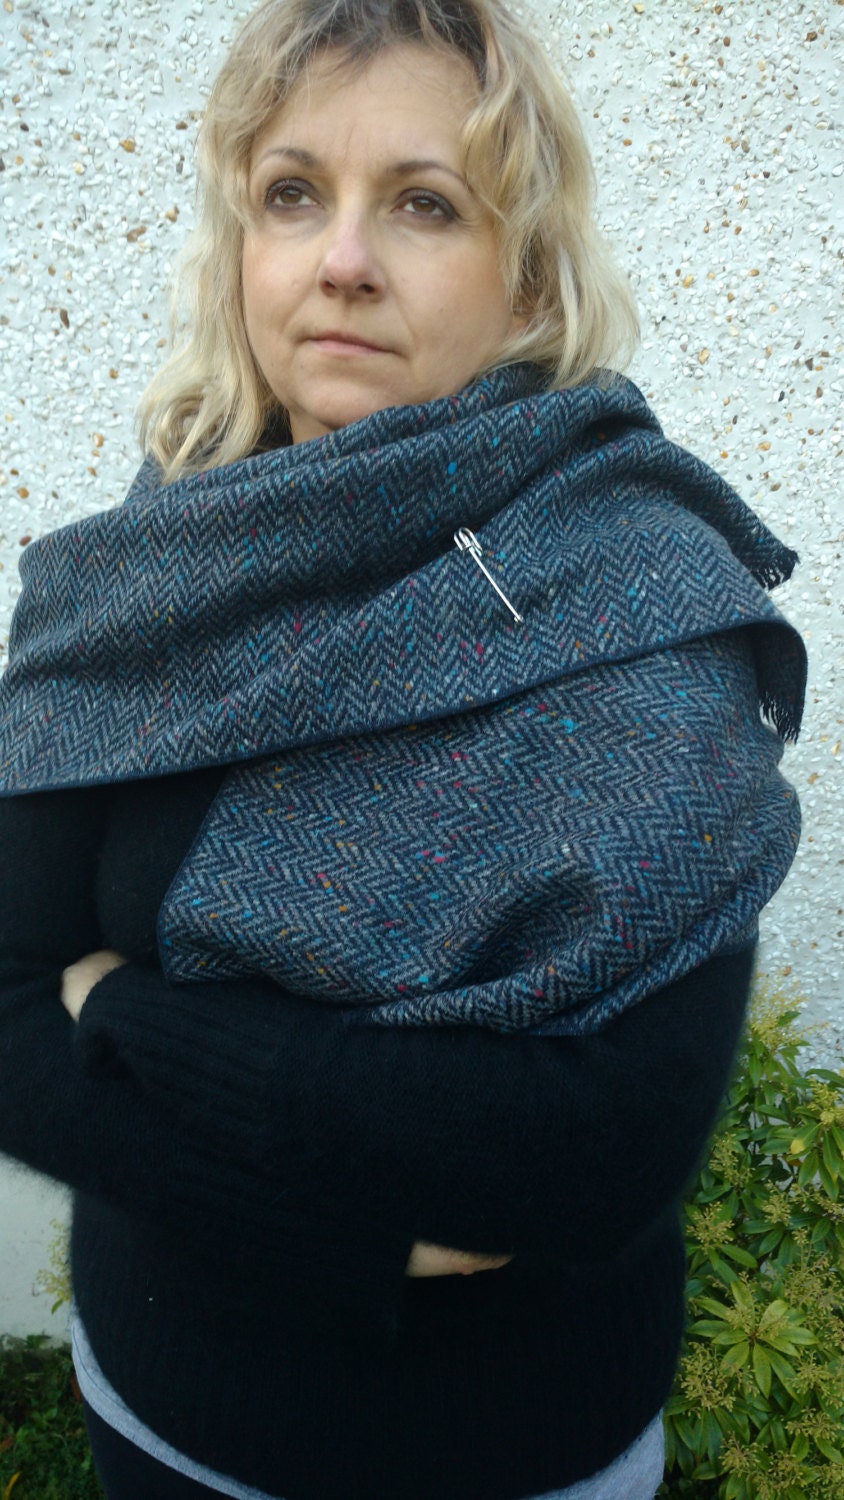 Ierse tweed wollen sjaal 100% wol oversized sjaal gestolen grijs / blauw / zwarte strepen HANDGEMAAKT IN IERLAND Accessoires Sjaals & omslagdoeken Sjaals & omslagdoeken hand omzoomd 